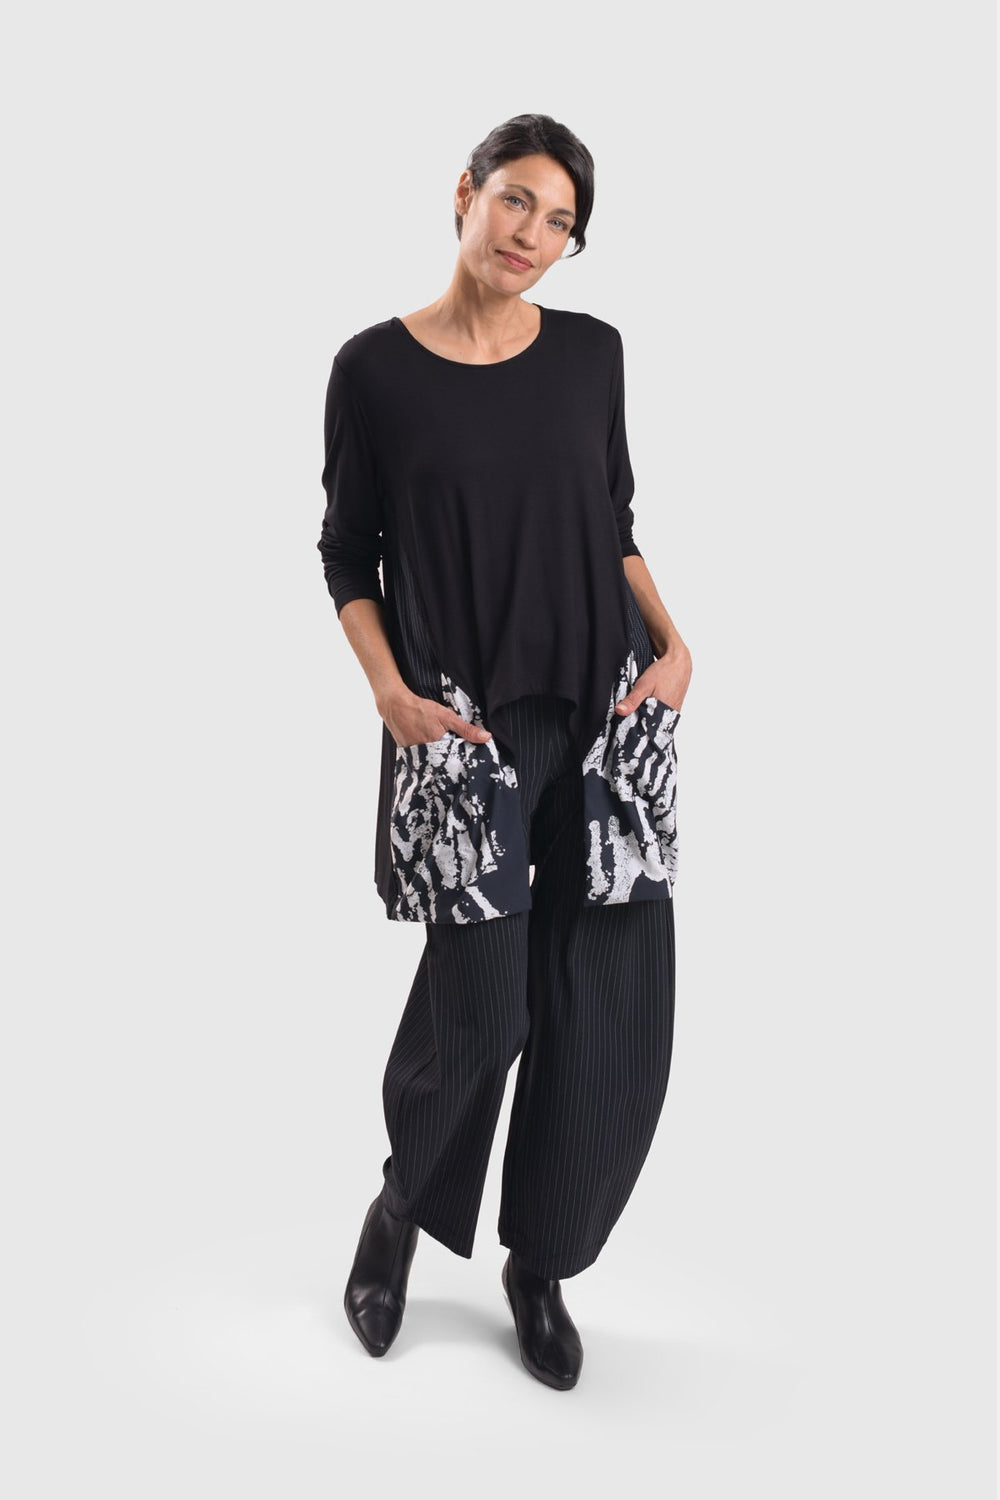 Designed Black & White Pants for Women Over 50